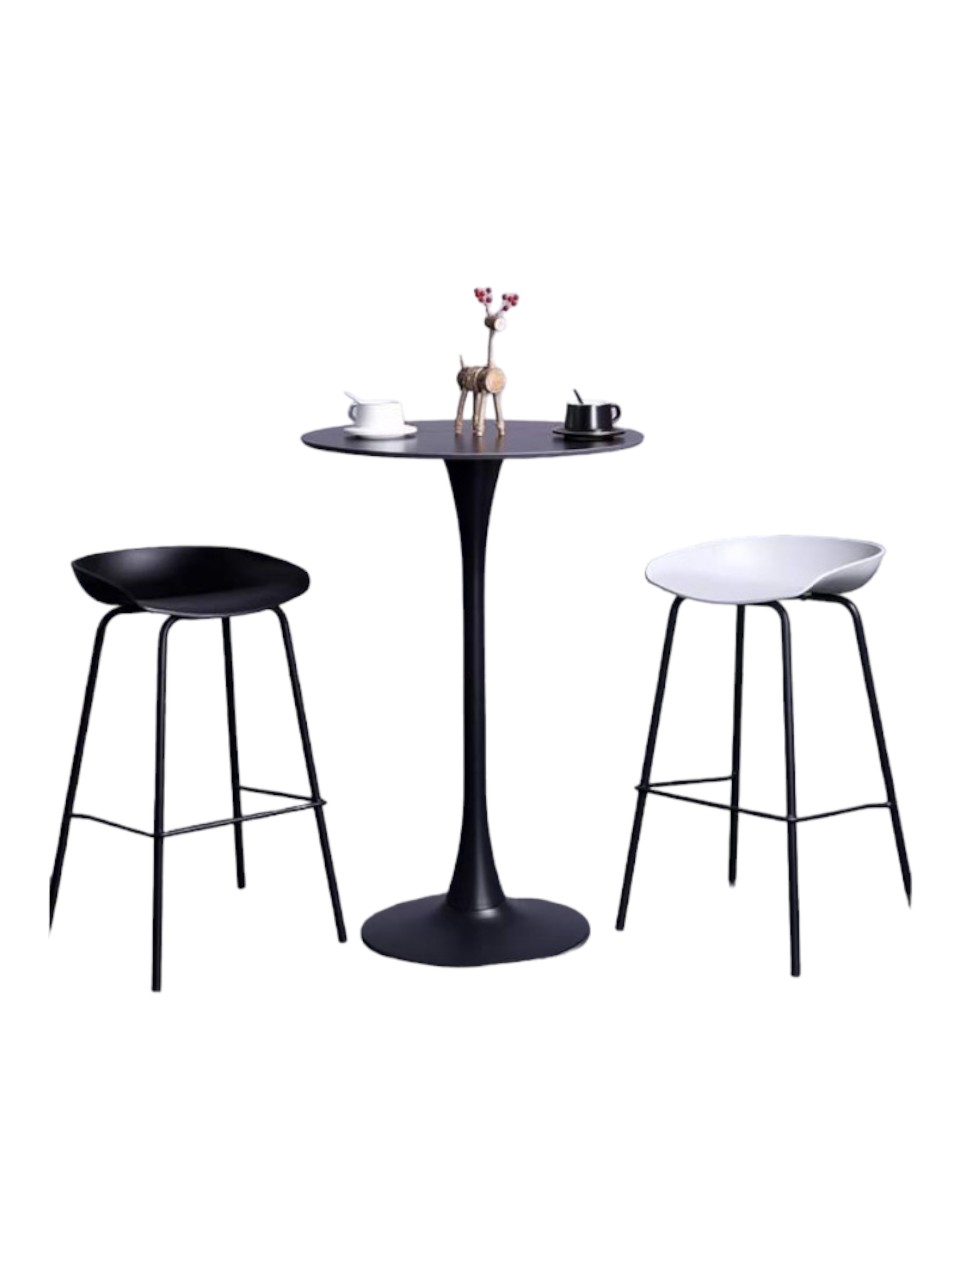 Bộ bàn ghế bar cafe hiện đại : KG – 295